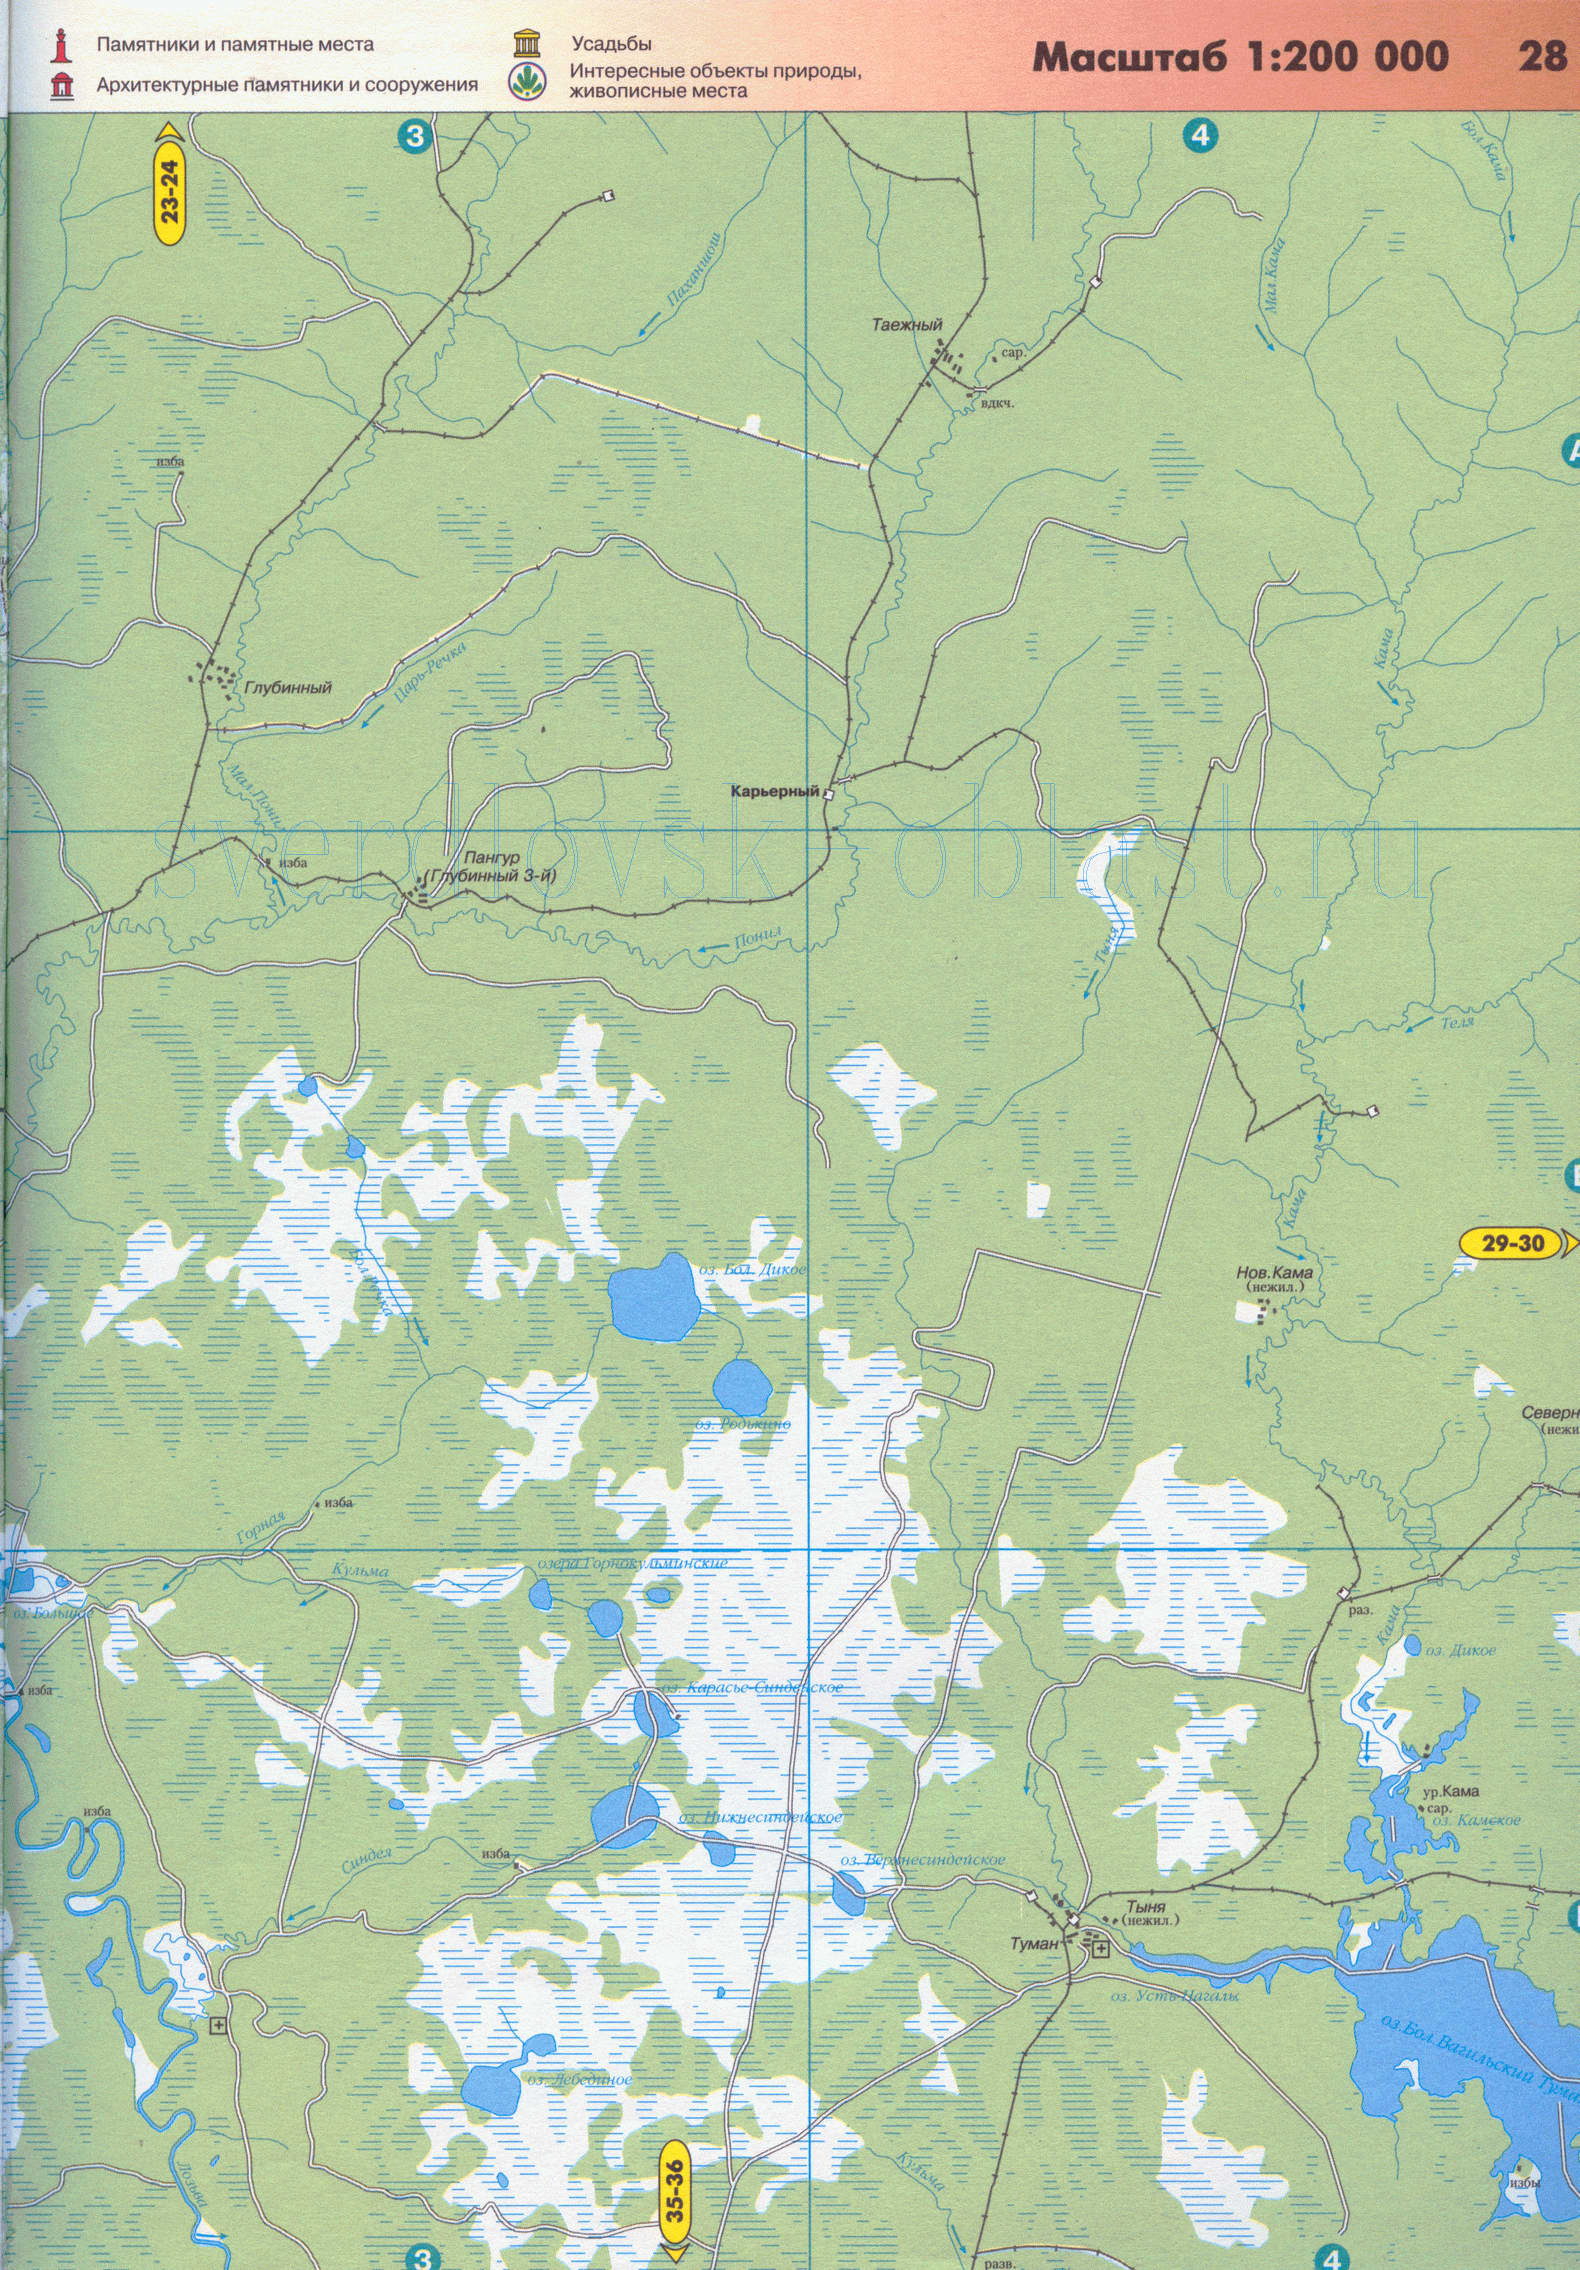 Карта окрестностей города Североуральск Свердловской области (г Североуральск 33 тысячи жителей), D0 - 